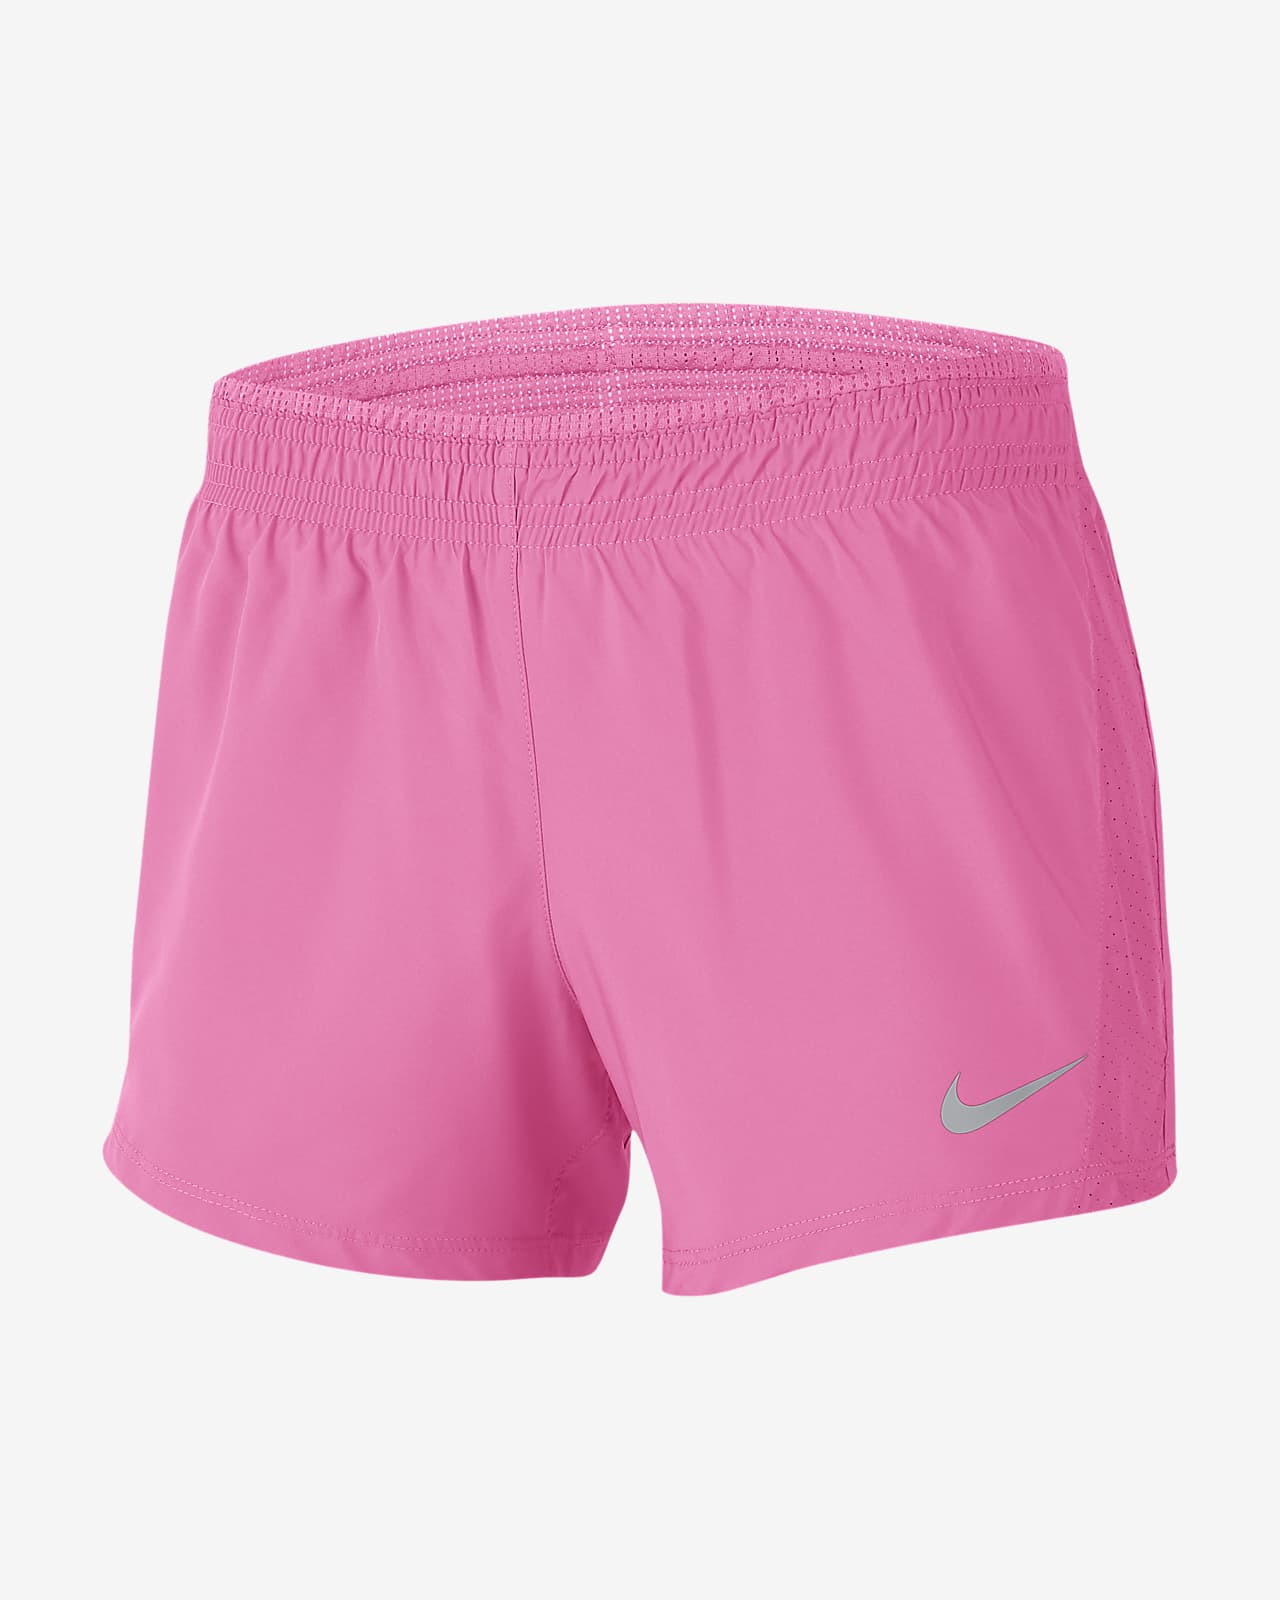 nike running shorts pink